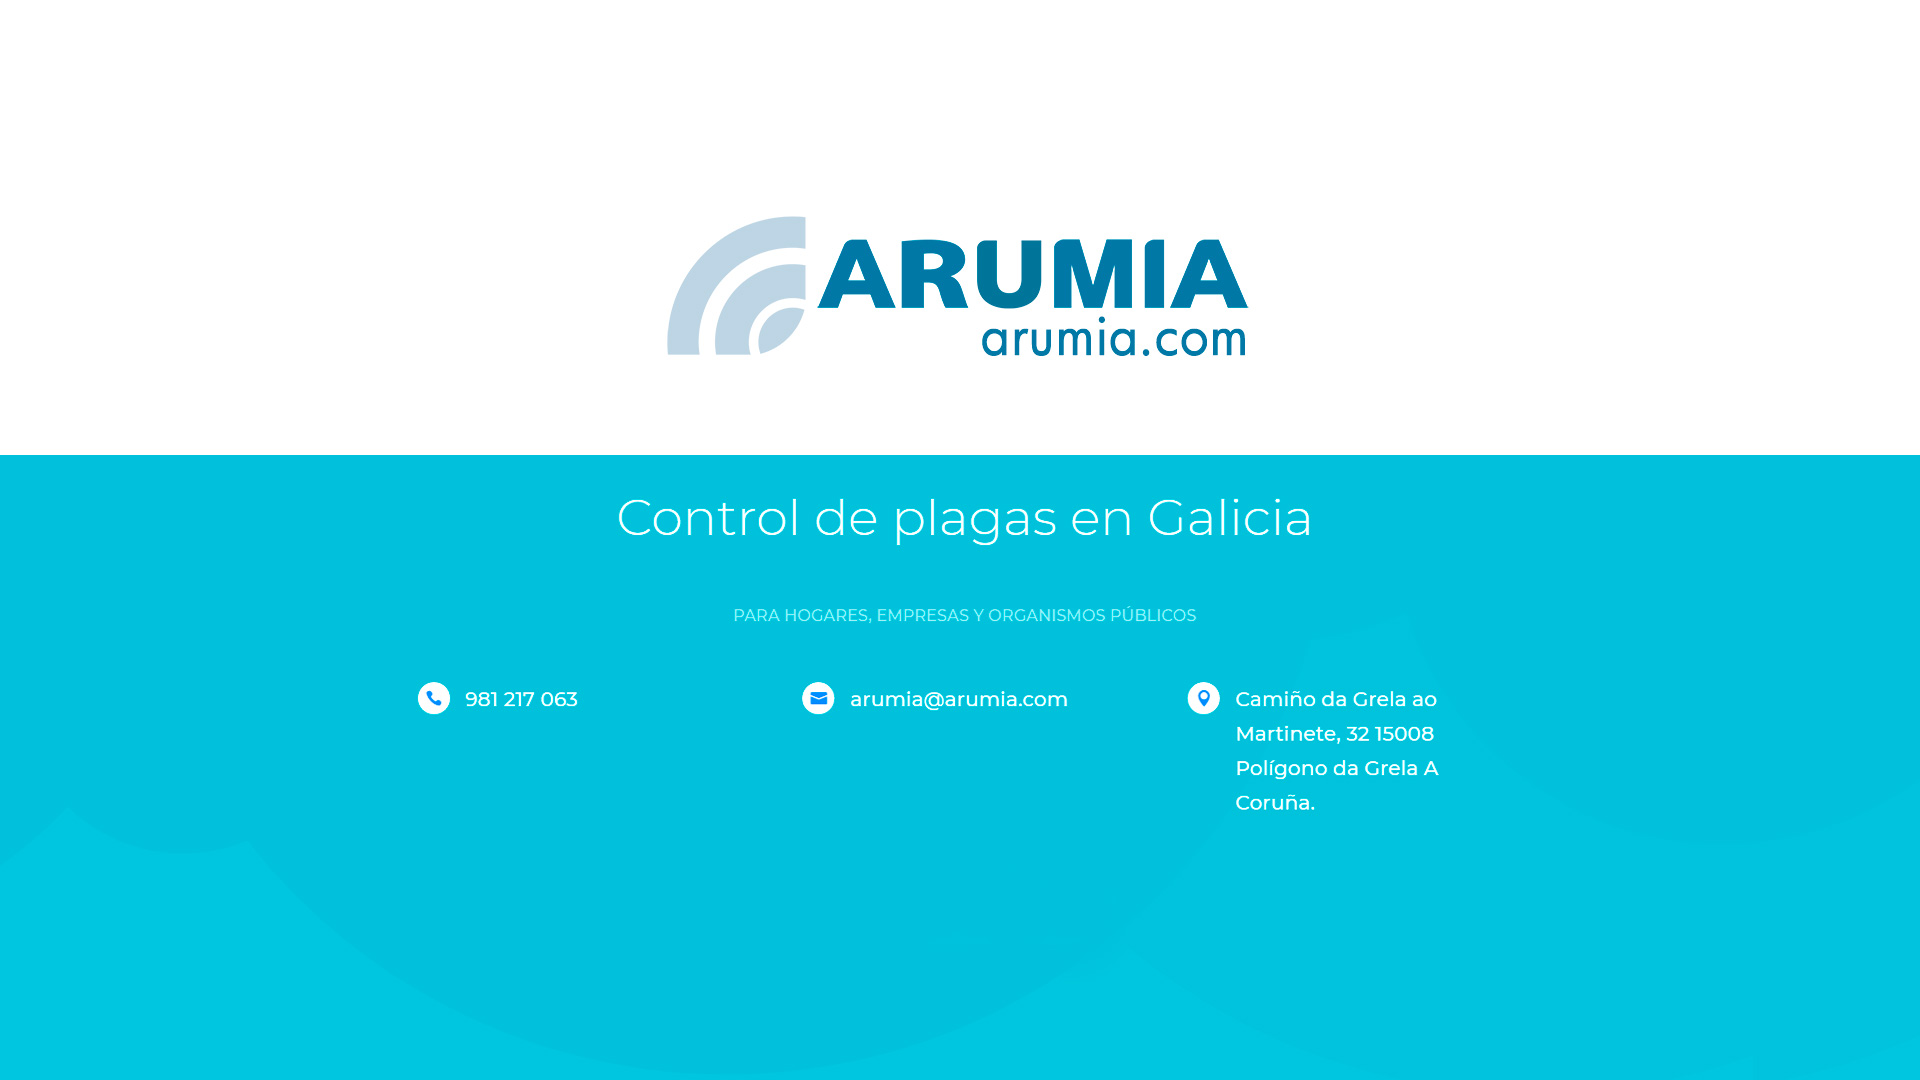 (c) Arumia.com